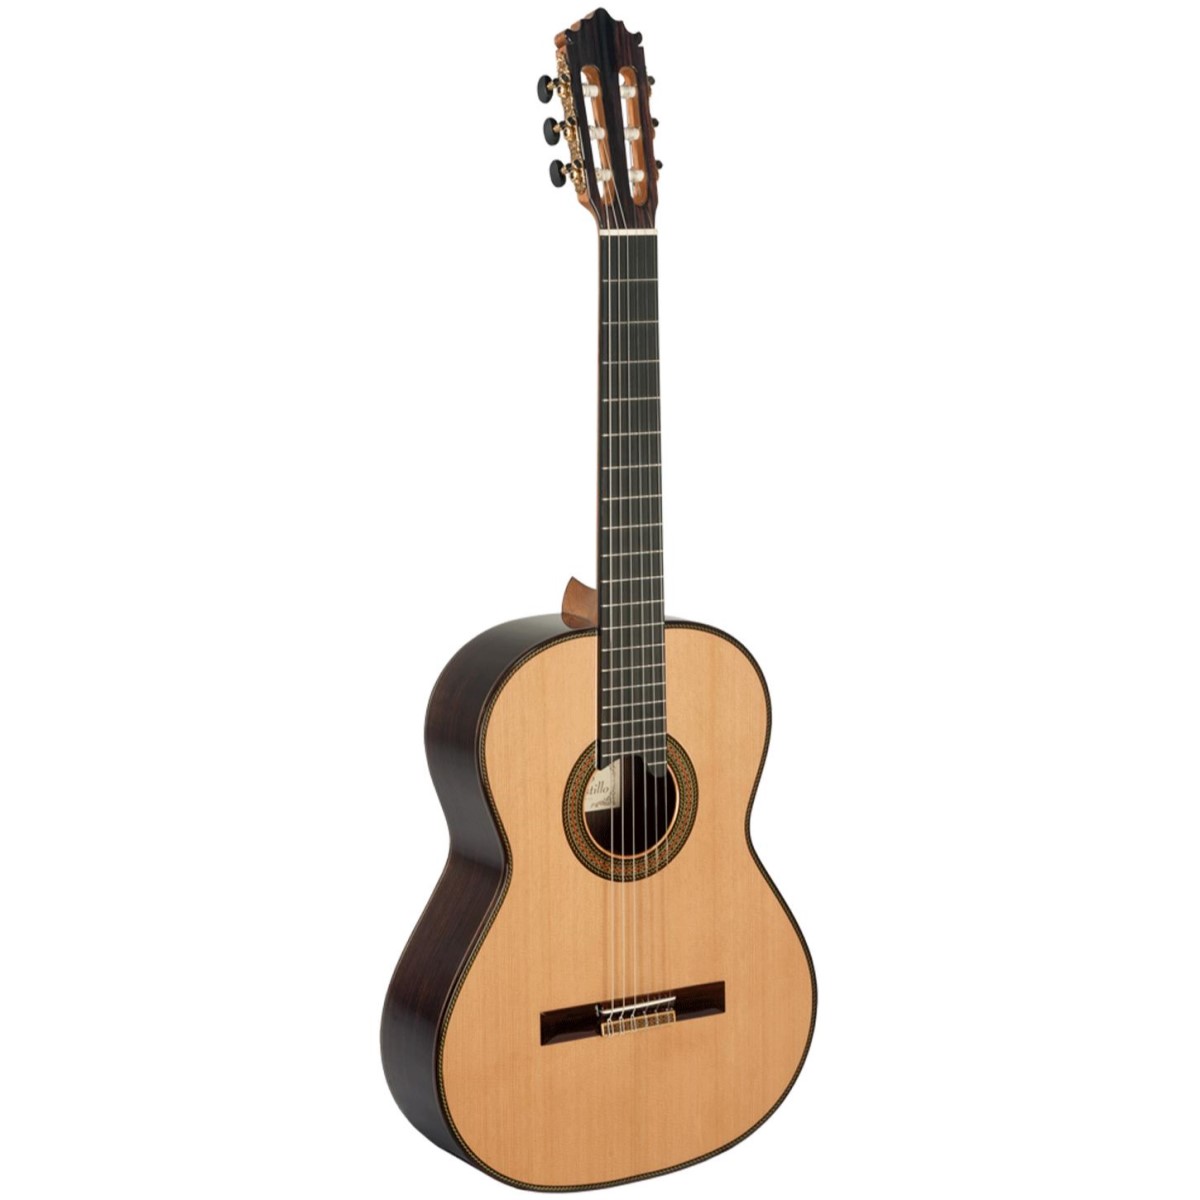 Comprar Guitarra Paco Castillo al mejor precio en Prieto M�sica